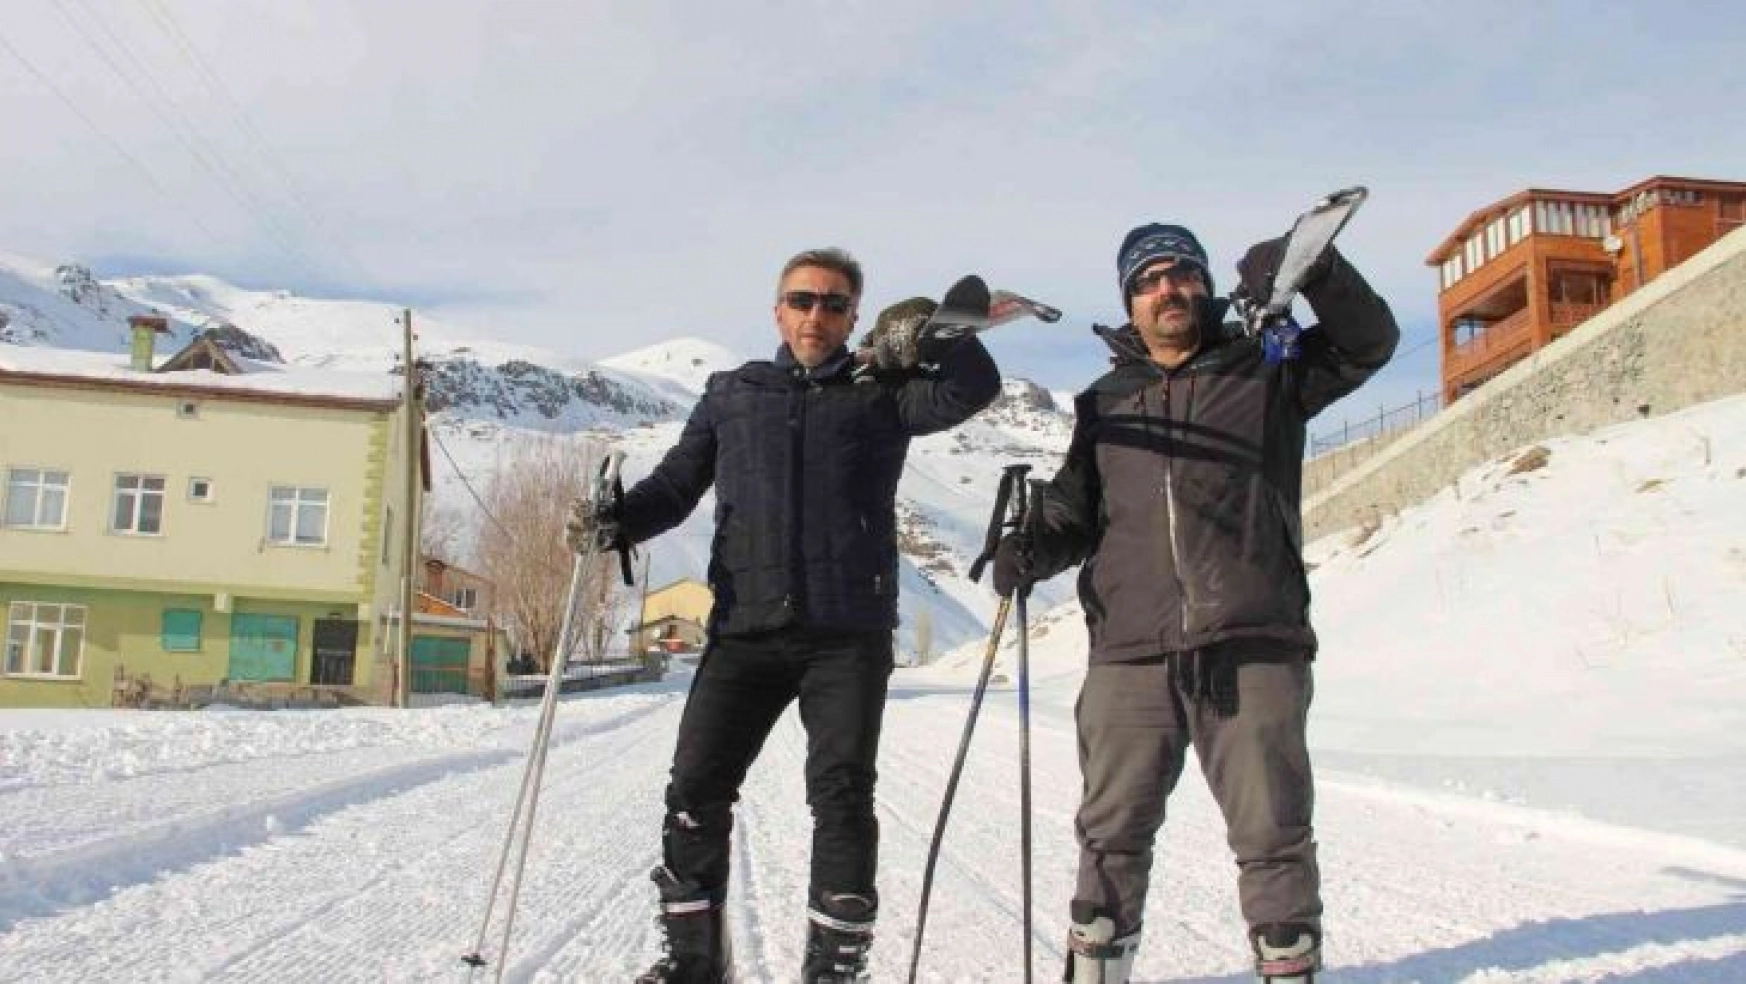 İspir Doğa Sporları Derneği üyeleri Ovit Dağı'nda kayak yaptı